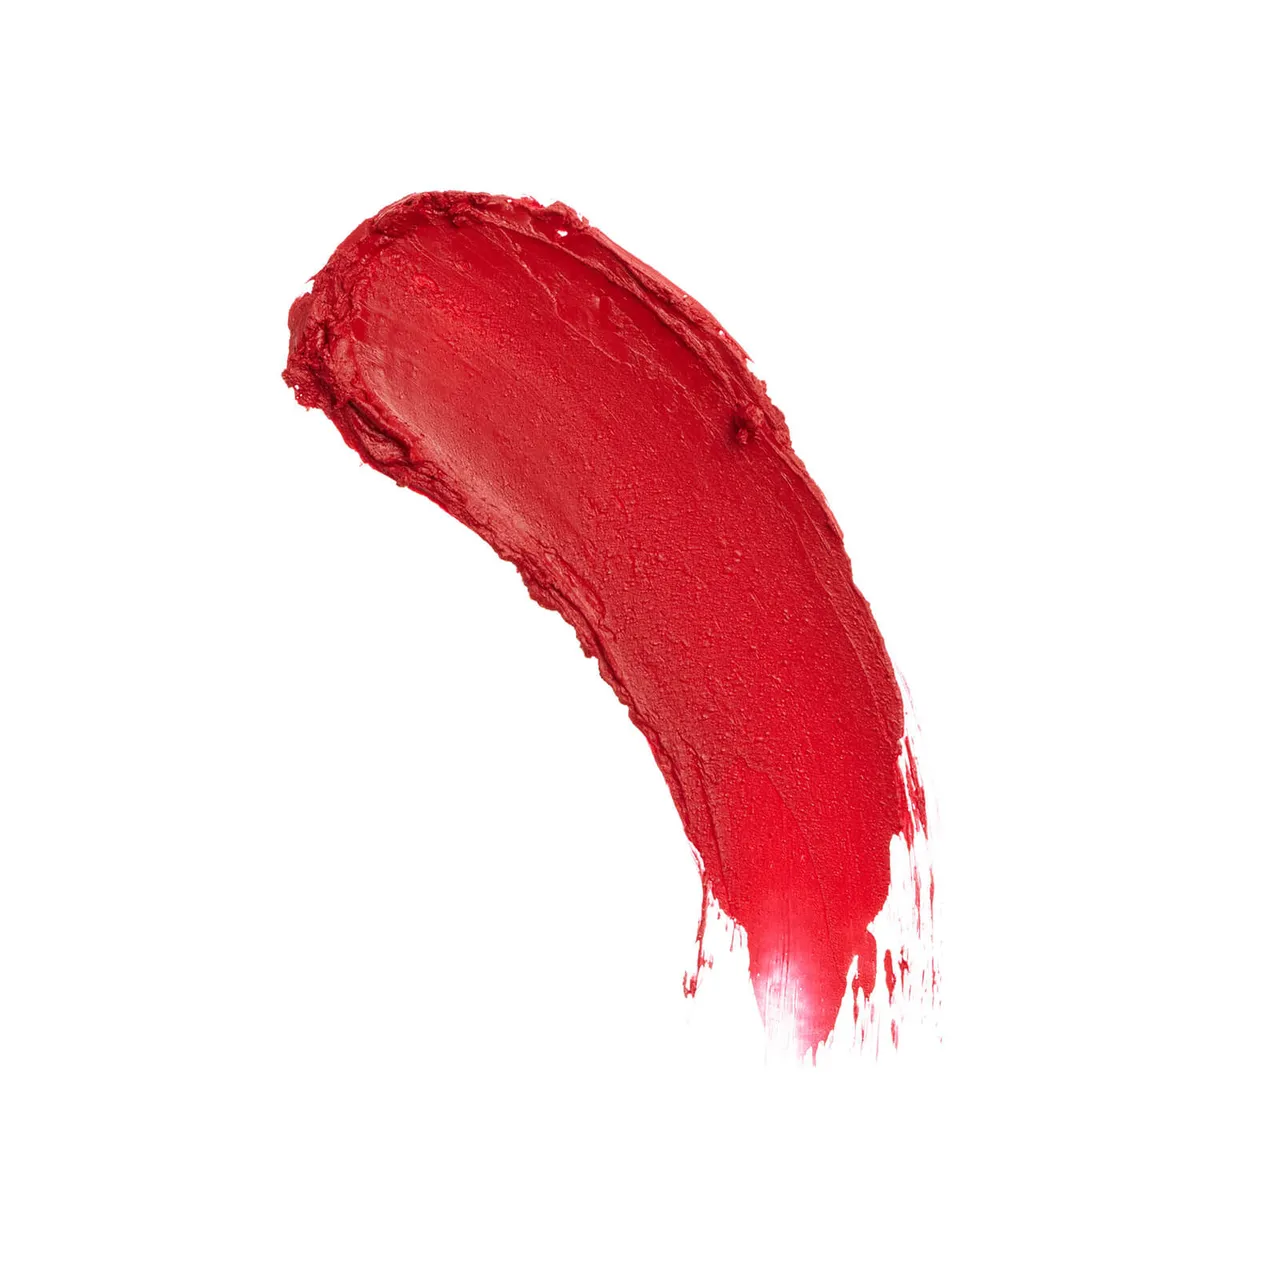 Revolution Pro New Neutral Satin Matte Lipstick 3.6g (Various Shades) - Stiletto